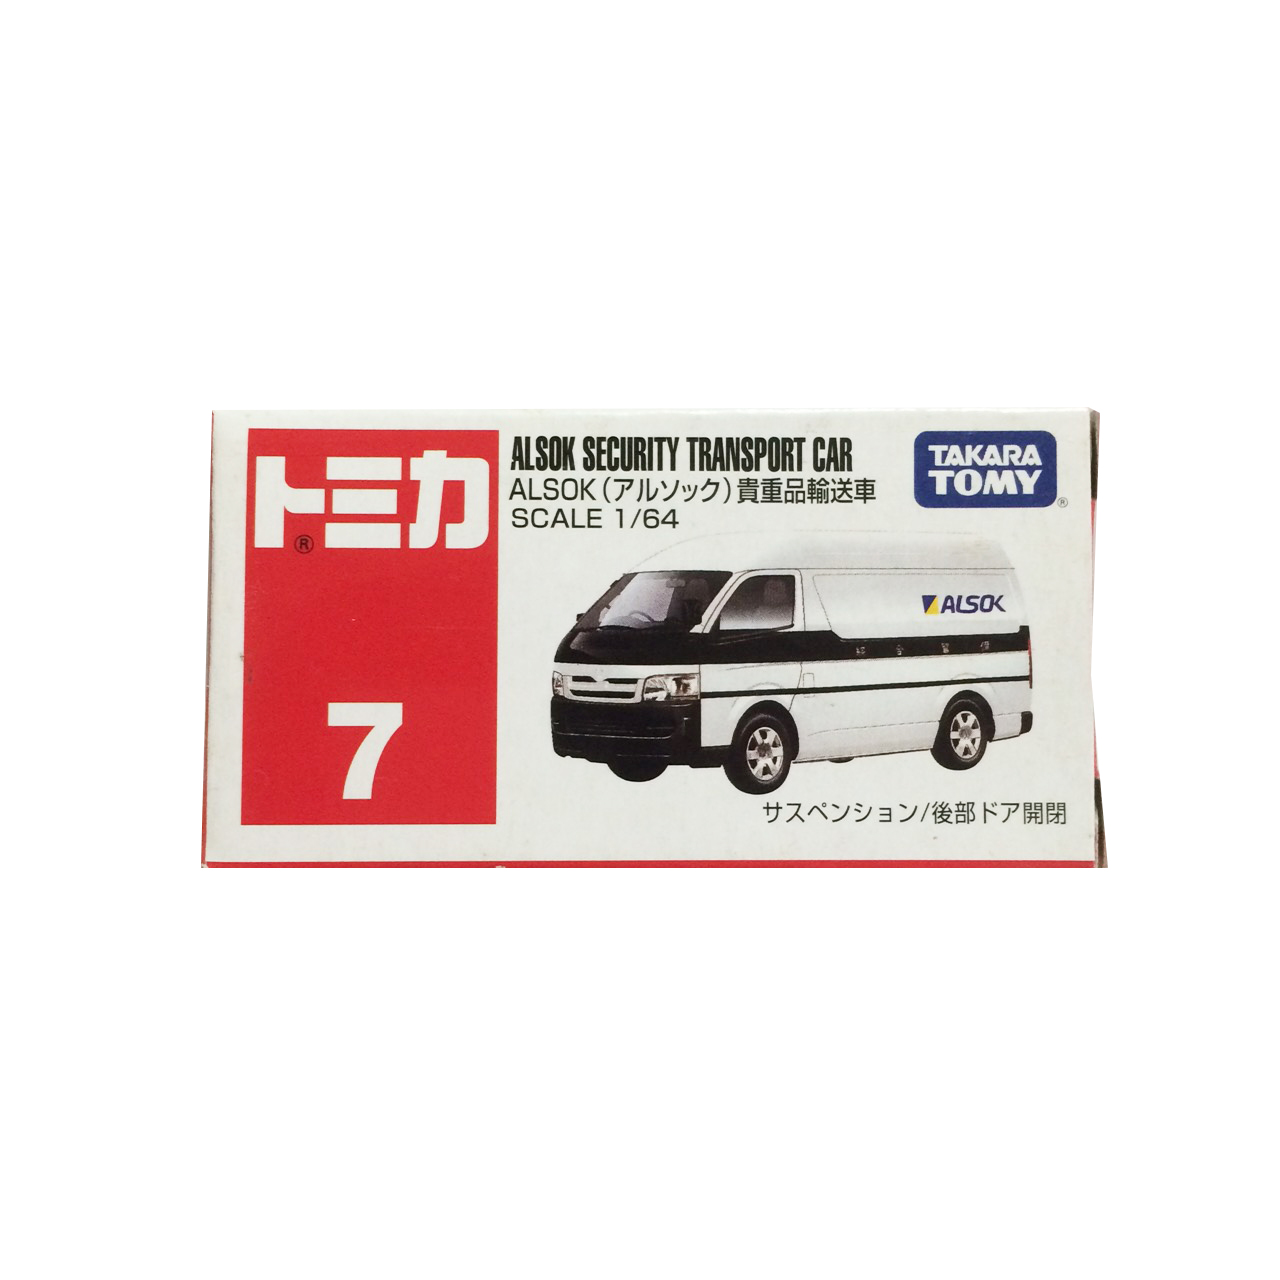 Tomica No 7 Alsok Security Transport Car 貴重品輸送車 玩具在旋轉拍賣